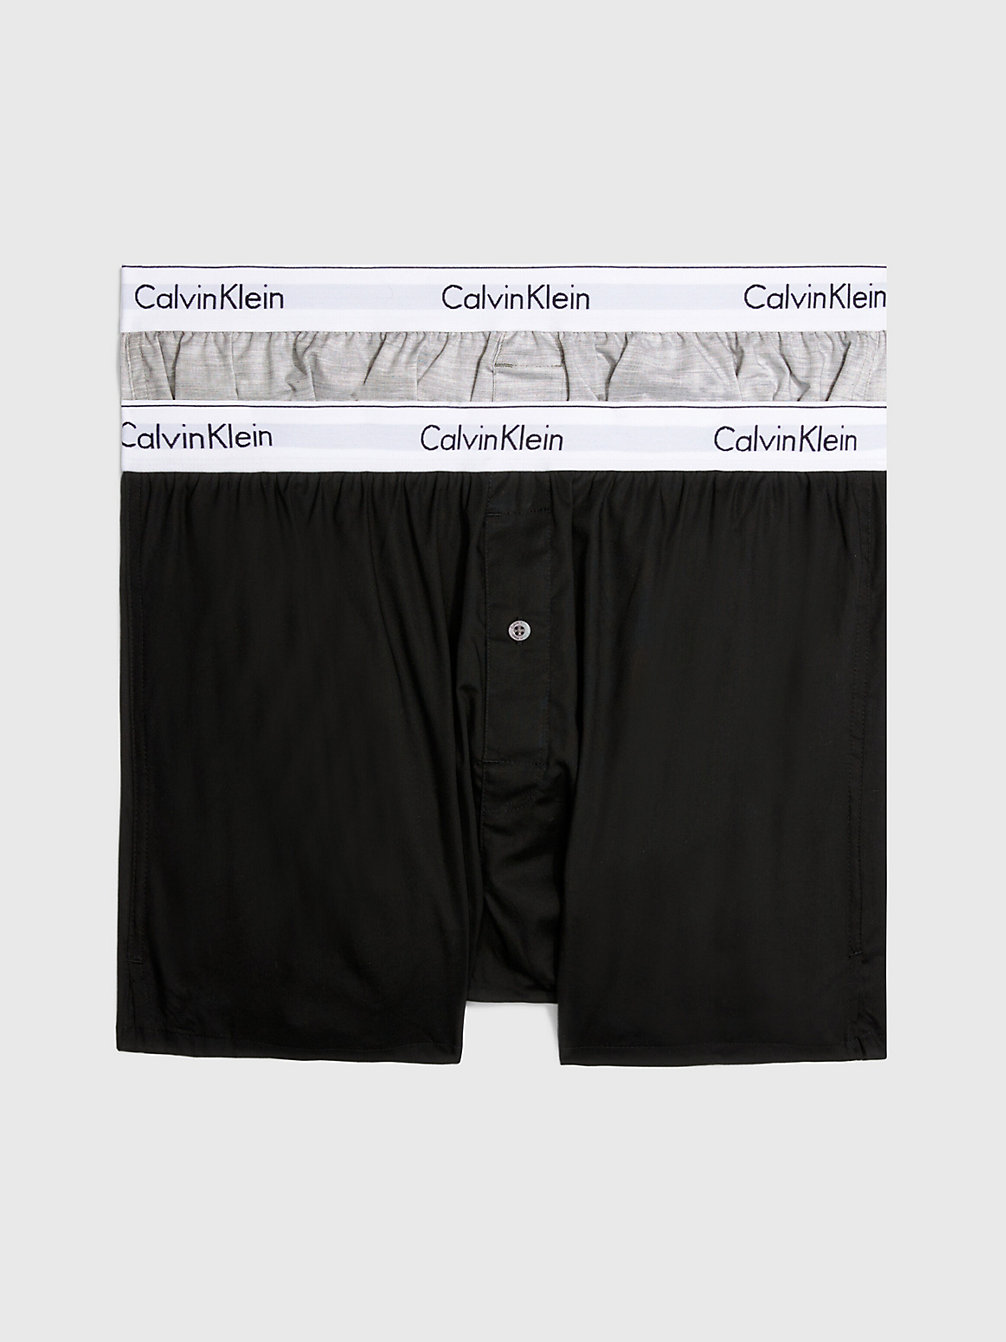 BLACK / GREY HEATHER 2-Pack Slim Fit Boxershorts - Modern Cotton undefined heren Calvin Klein